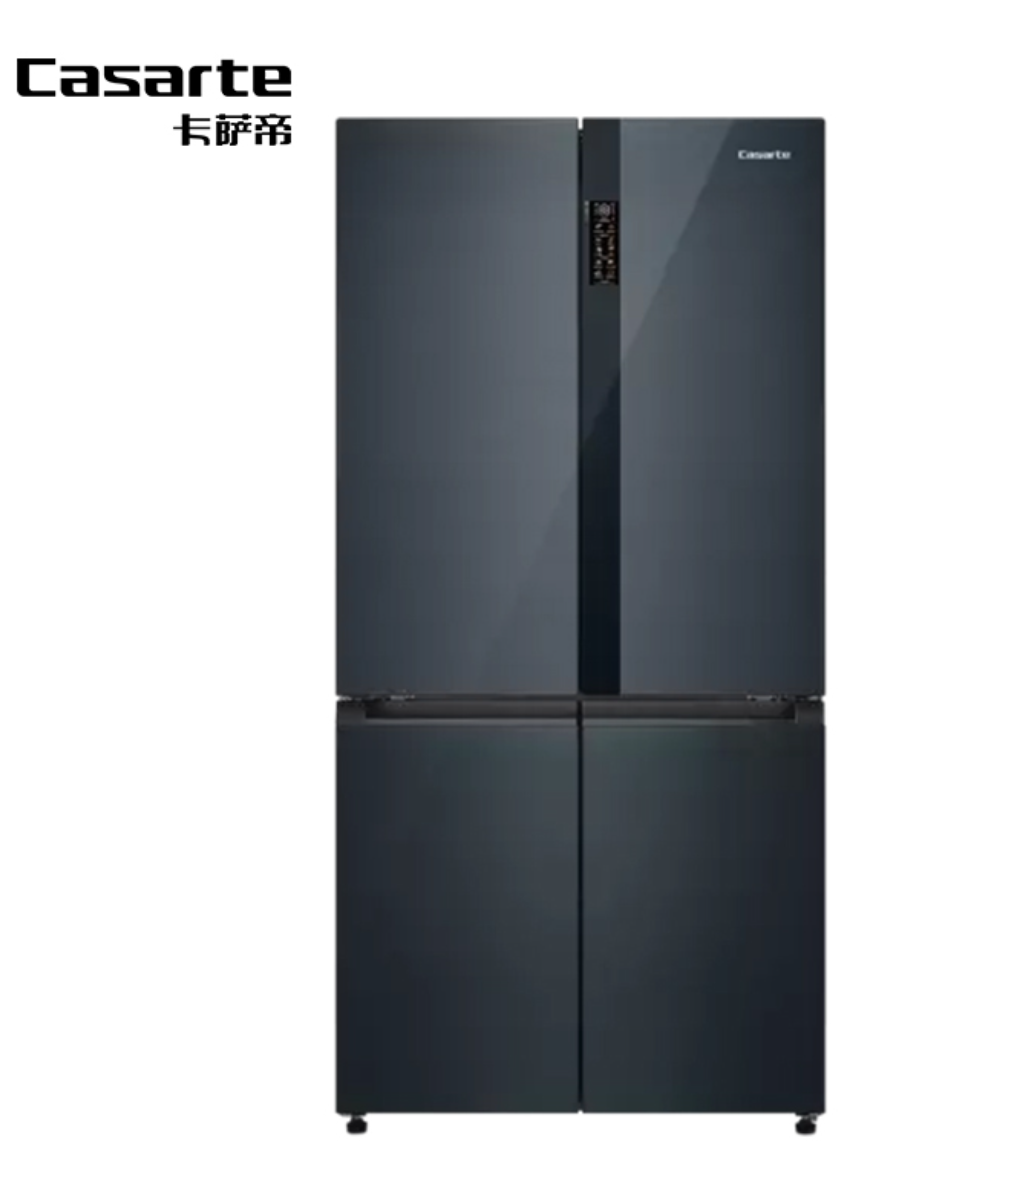 卡萨帝冰箱是哪国品牌生产的 家电知识 第1张